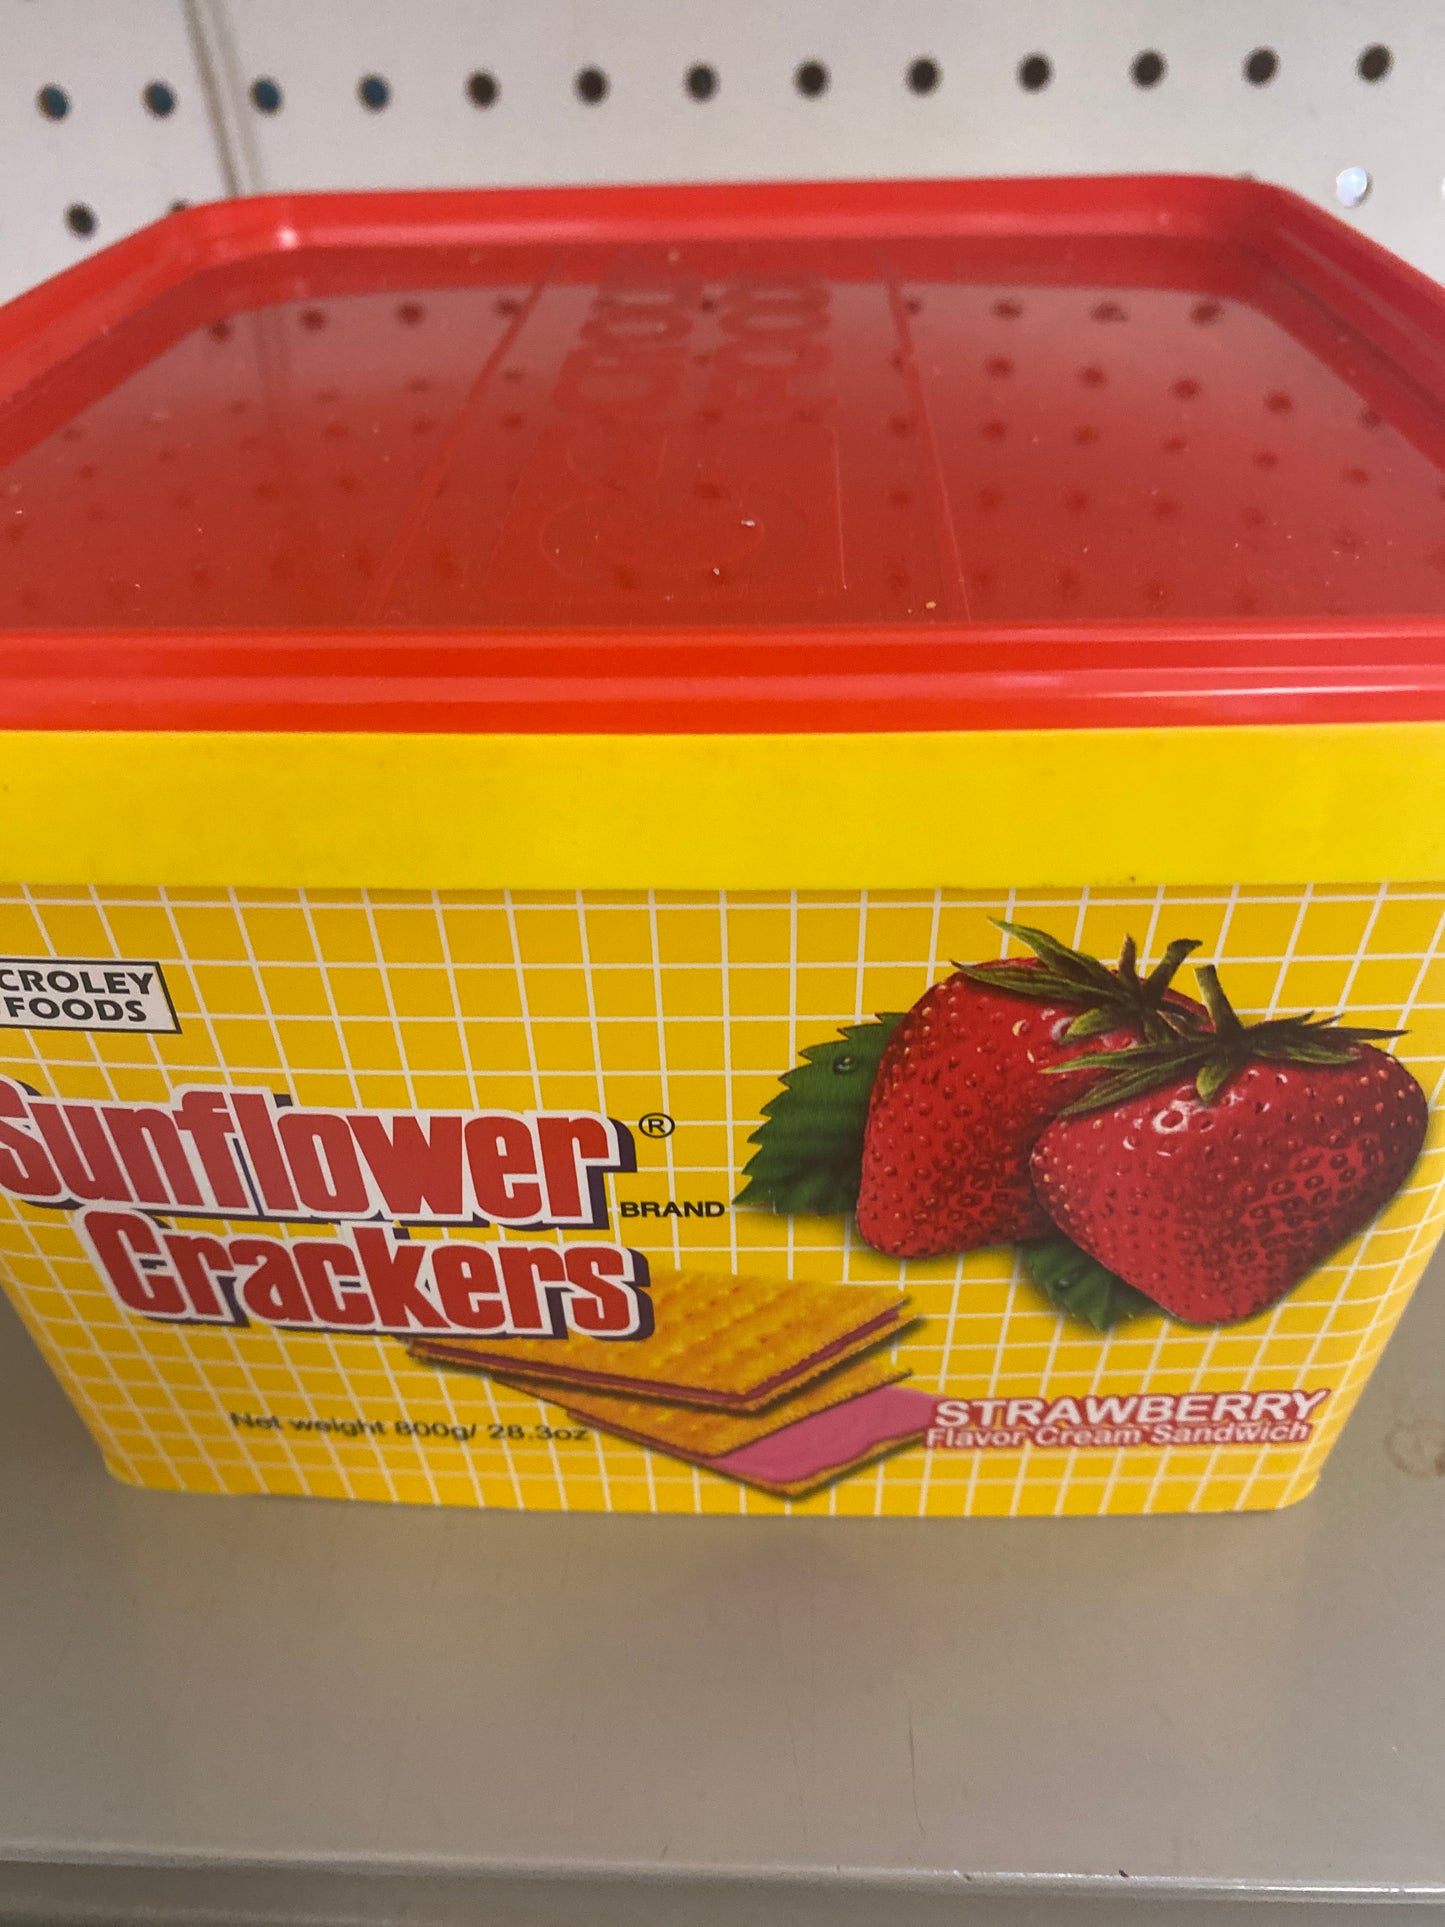 Croley Sunflower Cracker Sandwich Strawberry Flavor - 28.3oz